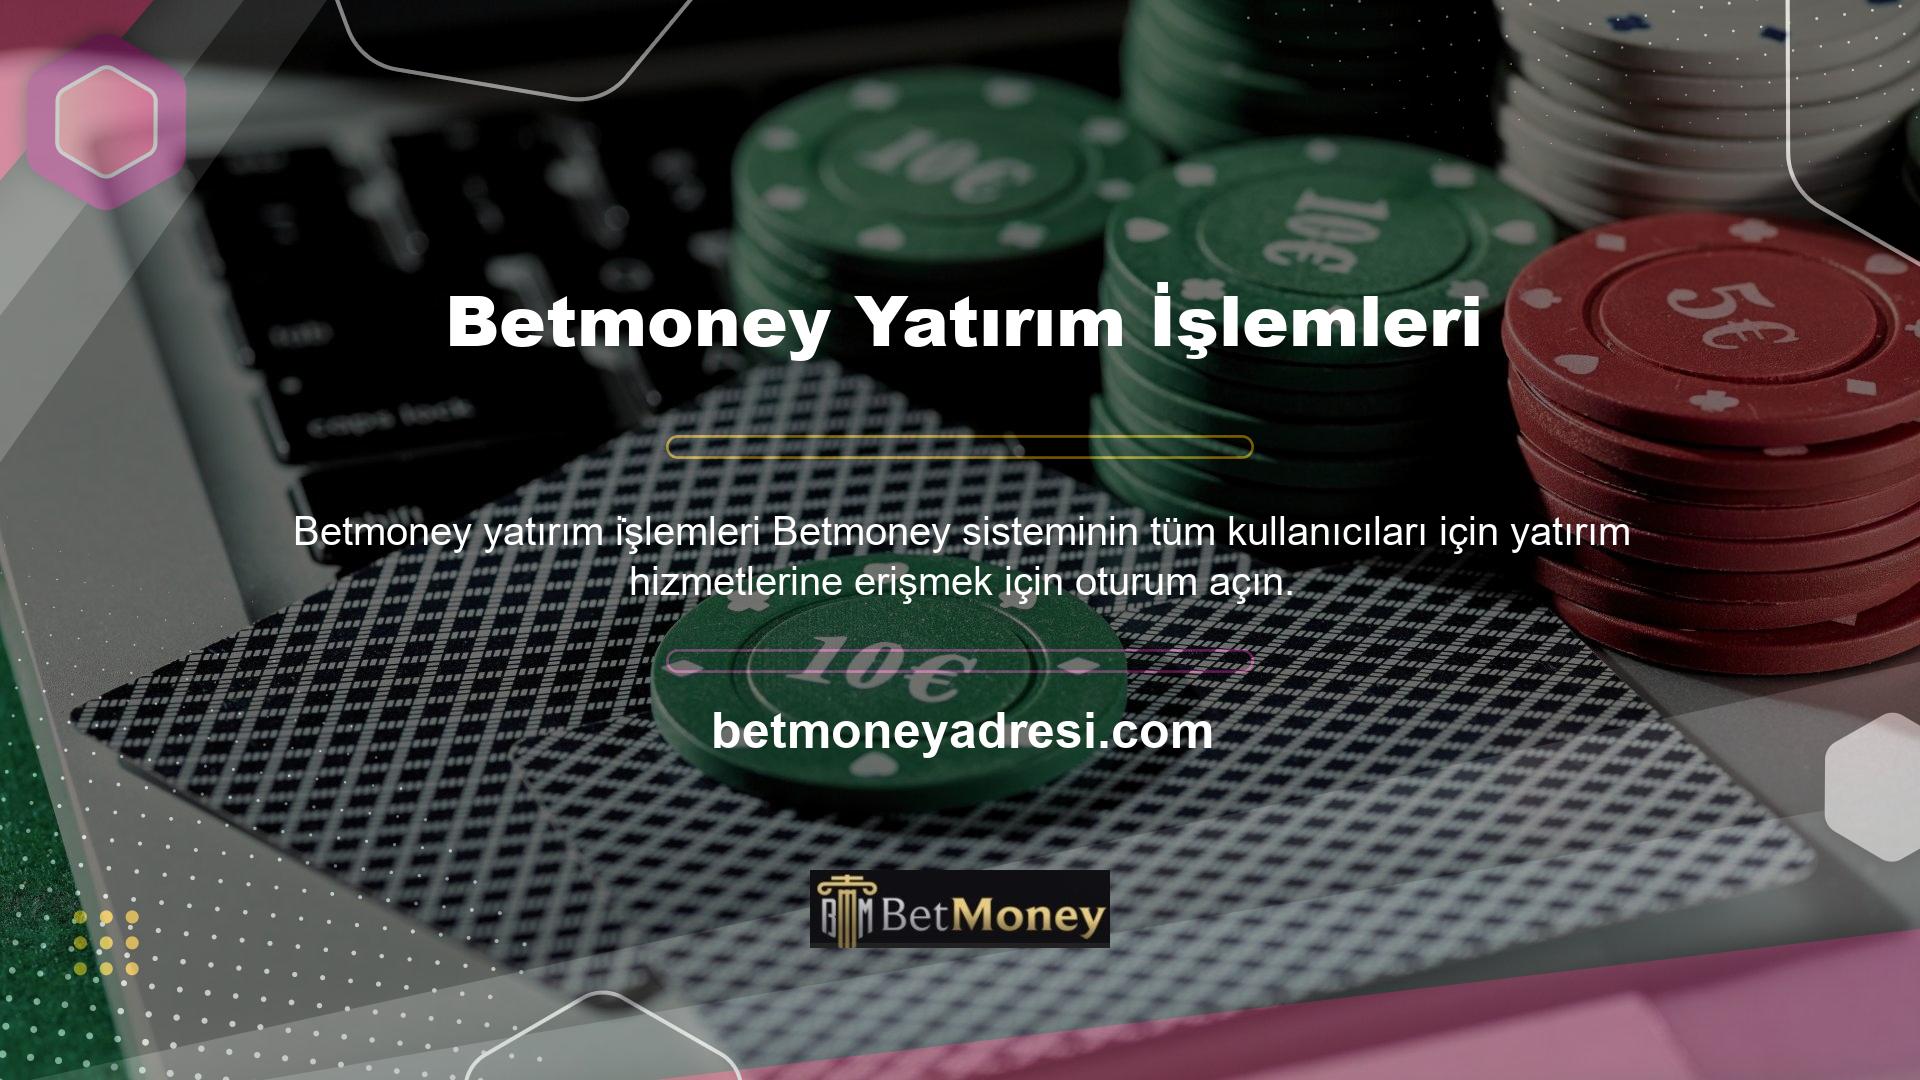 Casino sistemi, bahis kuponu oluşturarak oyun karı elde etmenizi sağlayan Betmoney yatırım yapmayı gerektirir